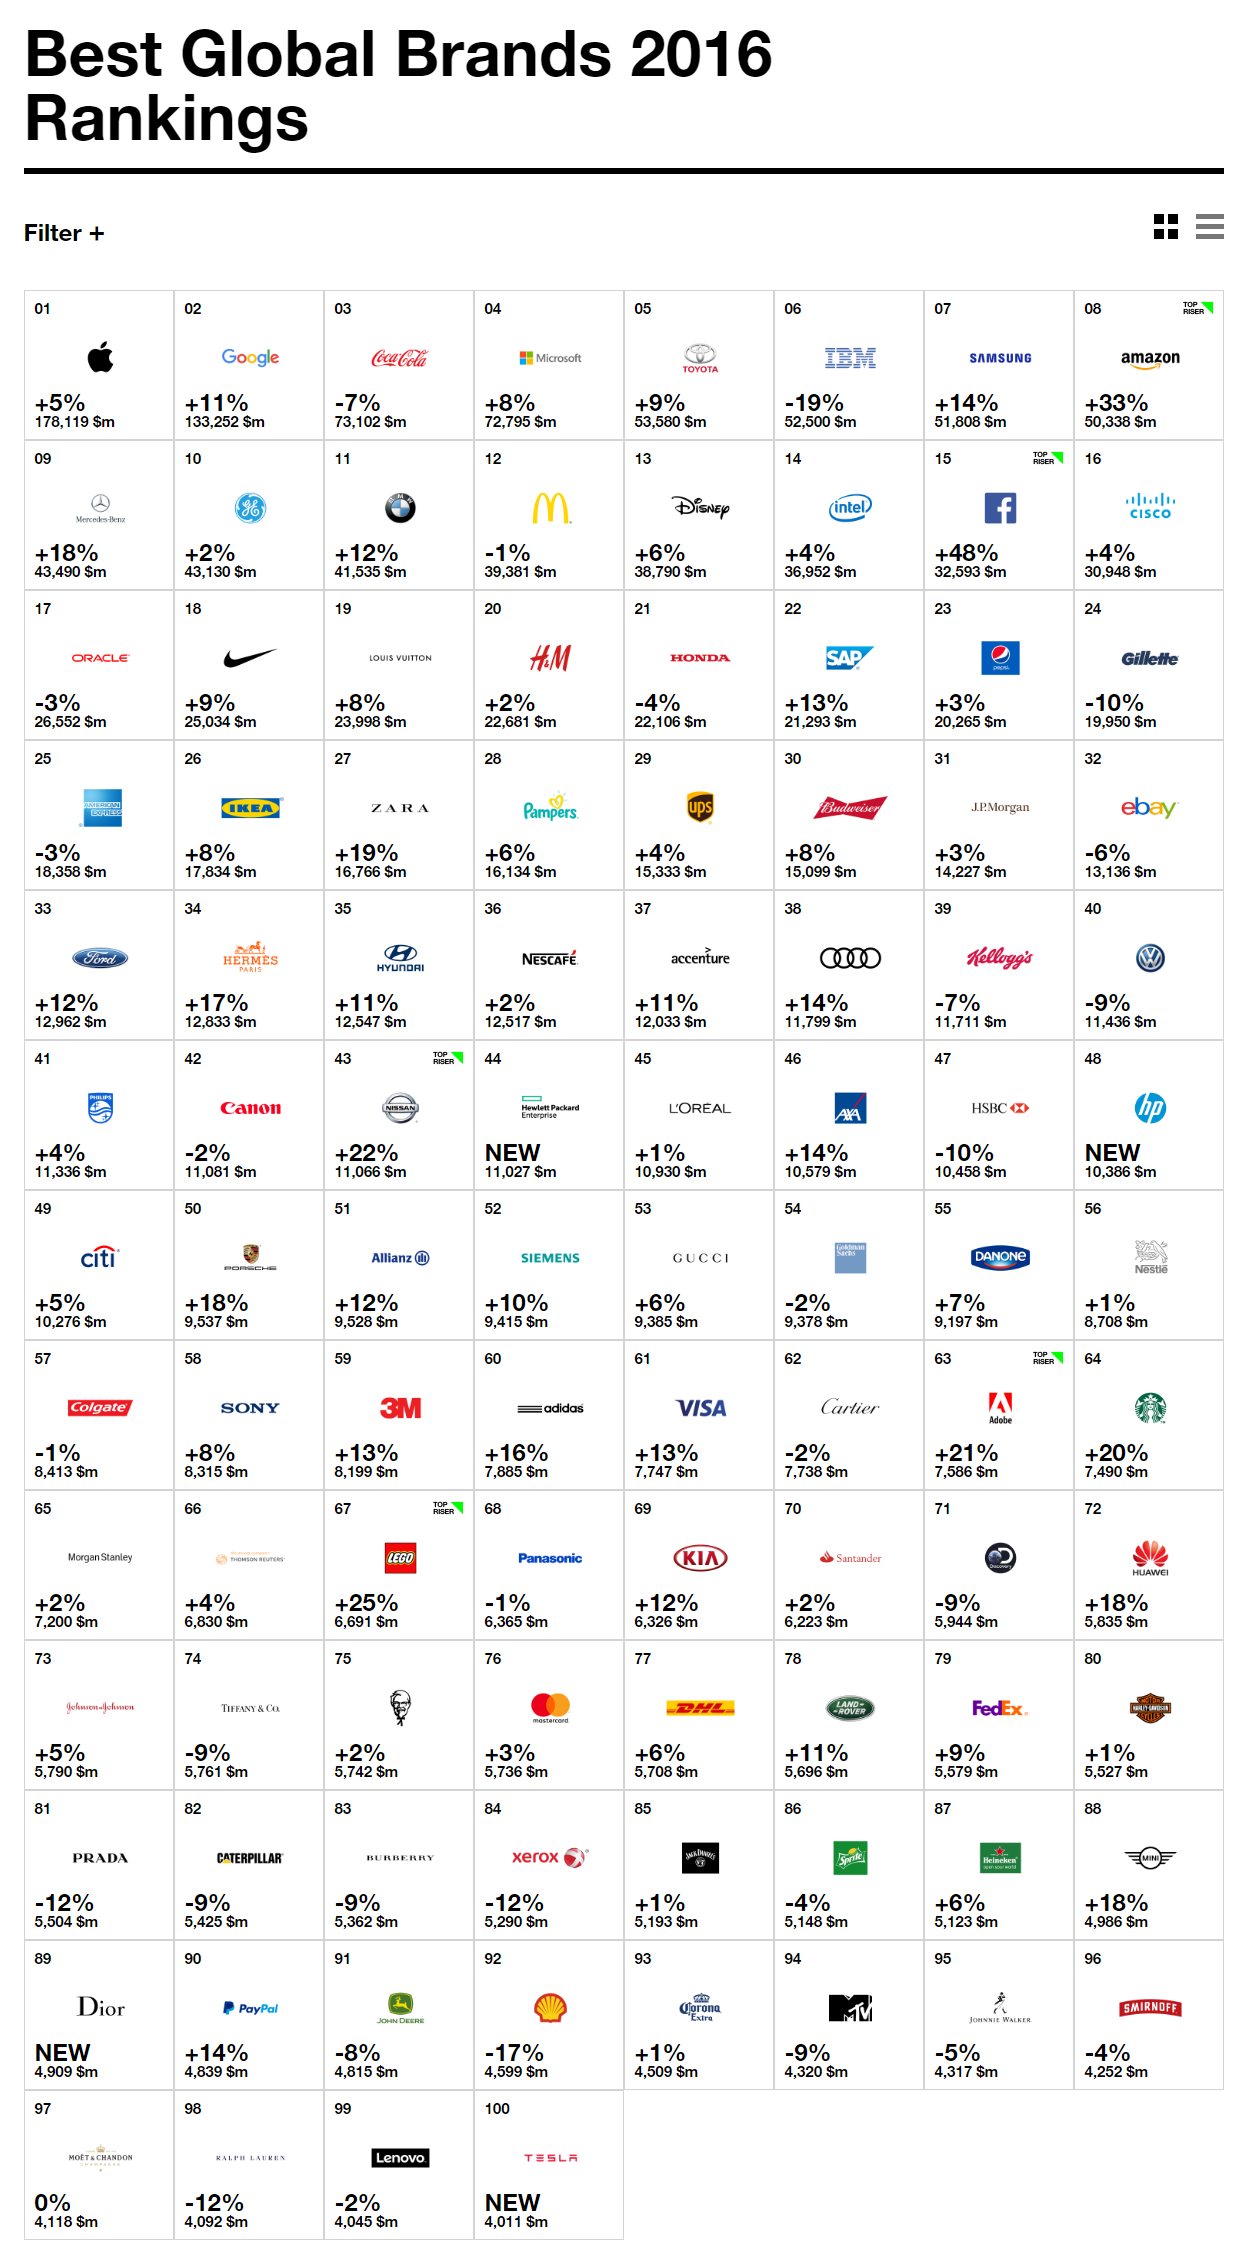 rankings-2016-best-global-brands-best-brands-interbrand